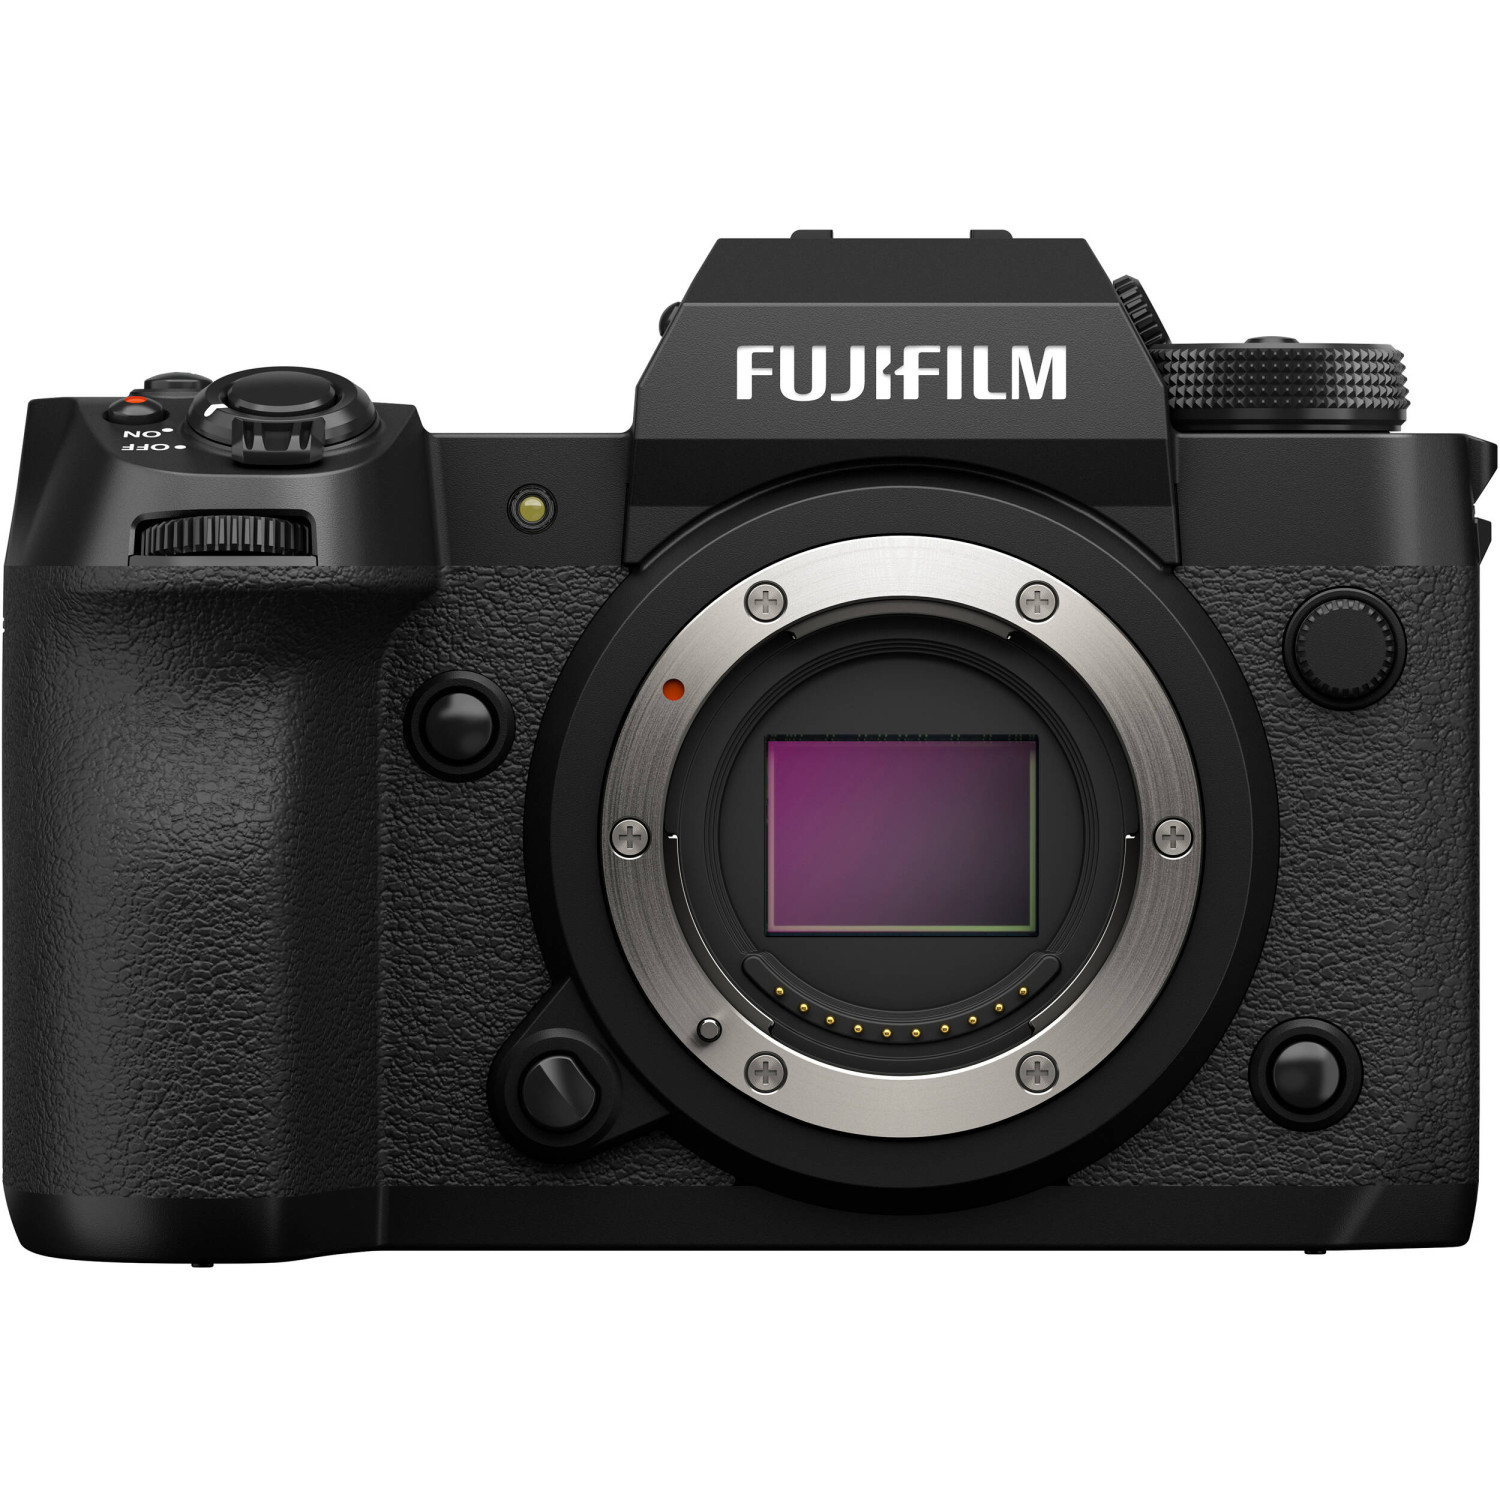 Máy Ảnh Fujifilm X-H2: Bạn đang tìm kiếm một chiếc máy ảnh giúp bạn chụp ảnh chuyên nghiệp mà không cần mang theo nhiều thiết bị? Fujifilm X-H2 chính là lựa chọn hoàn hảo cho bạn! Chất lượng ảnh sắc nét, màu sắc trung thực cùng tính năng vượt trội, chiếc máy ảnh này sẽ giúp bạn tạo ra những bức ảnh đẹp nhất từ trước đến nay.